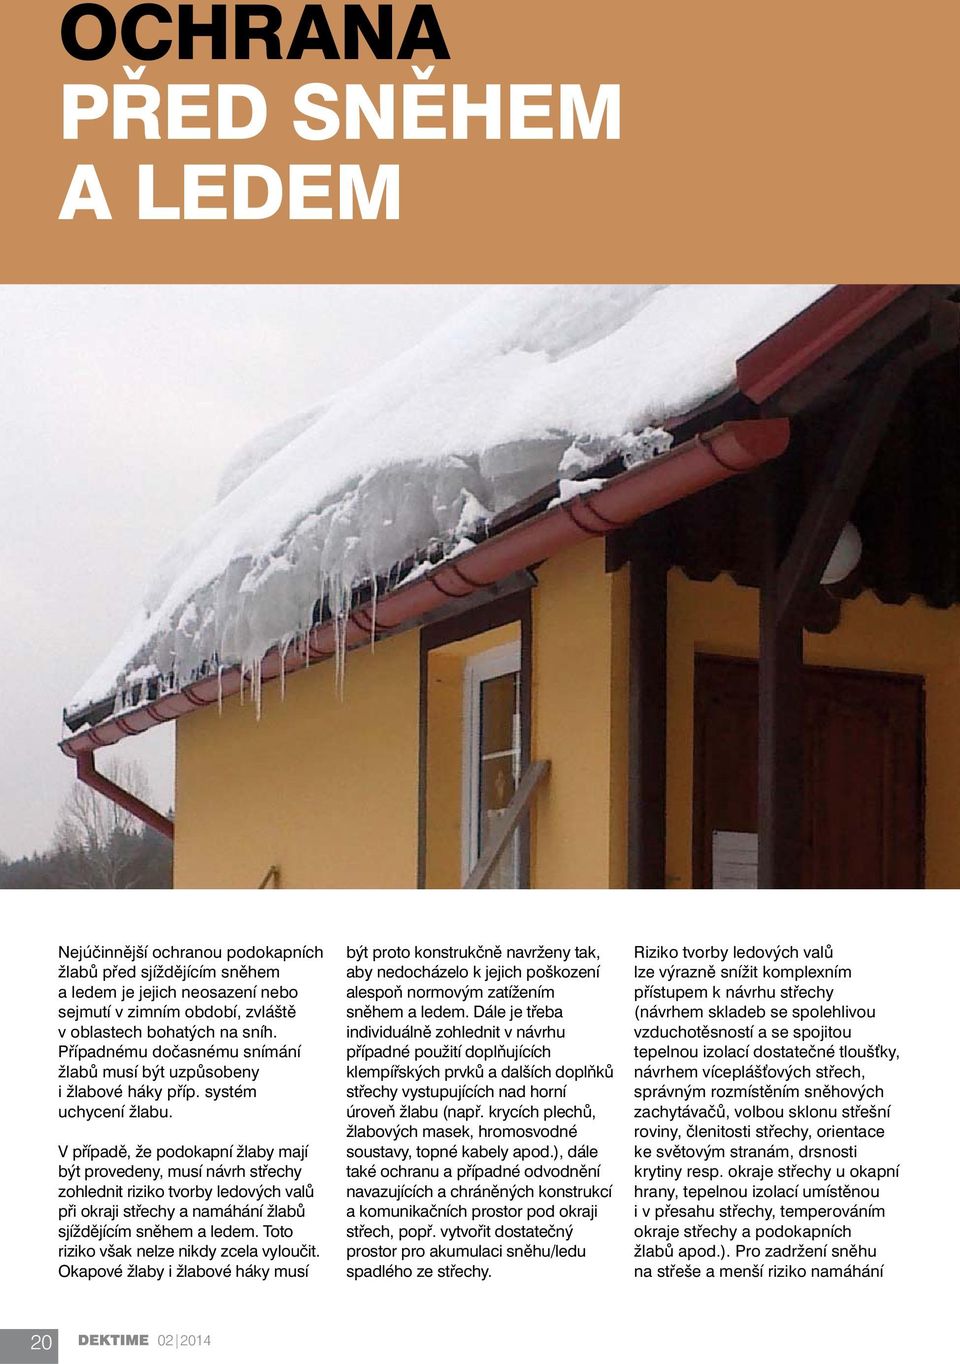 V případě, že podokapní žlaby mají být provedeny, musí návrh střechy zohlednit riziko tvorby ledových valů při okraji střechy a namáhání žlabů sjíždějícím sněhem a ledem.